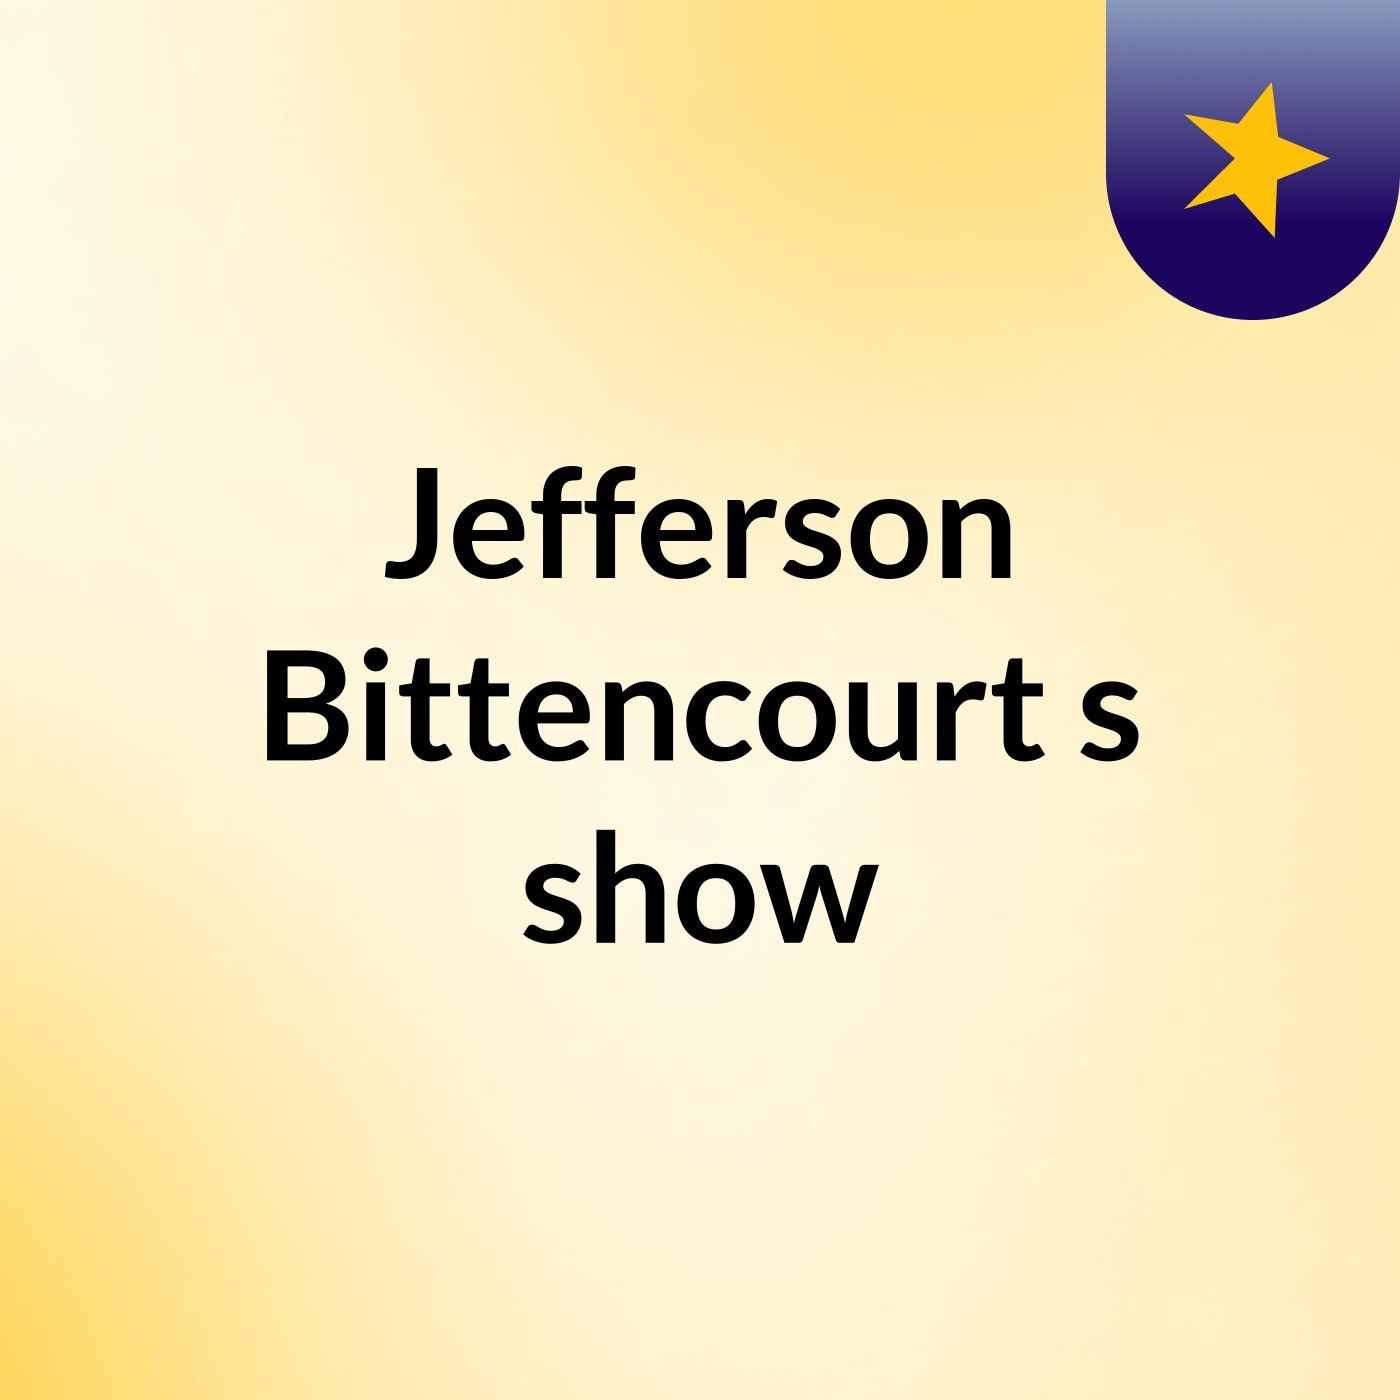 Jefferson Bittencourt's show